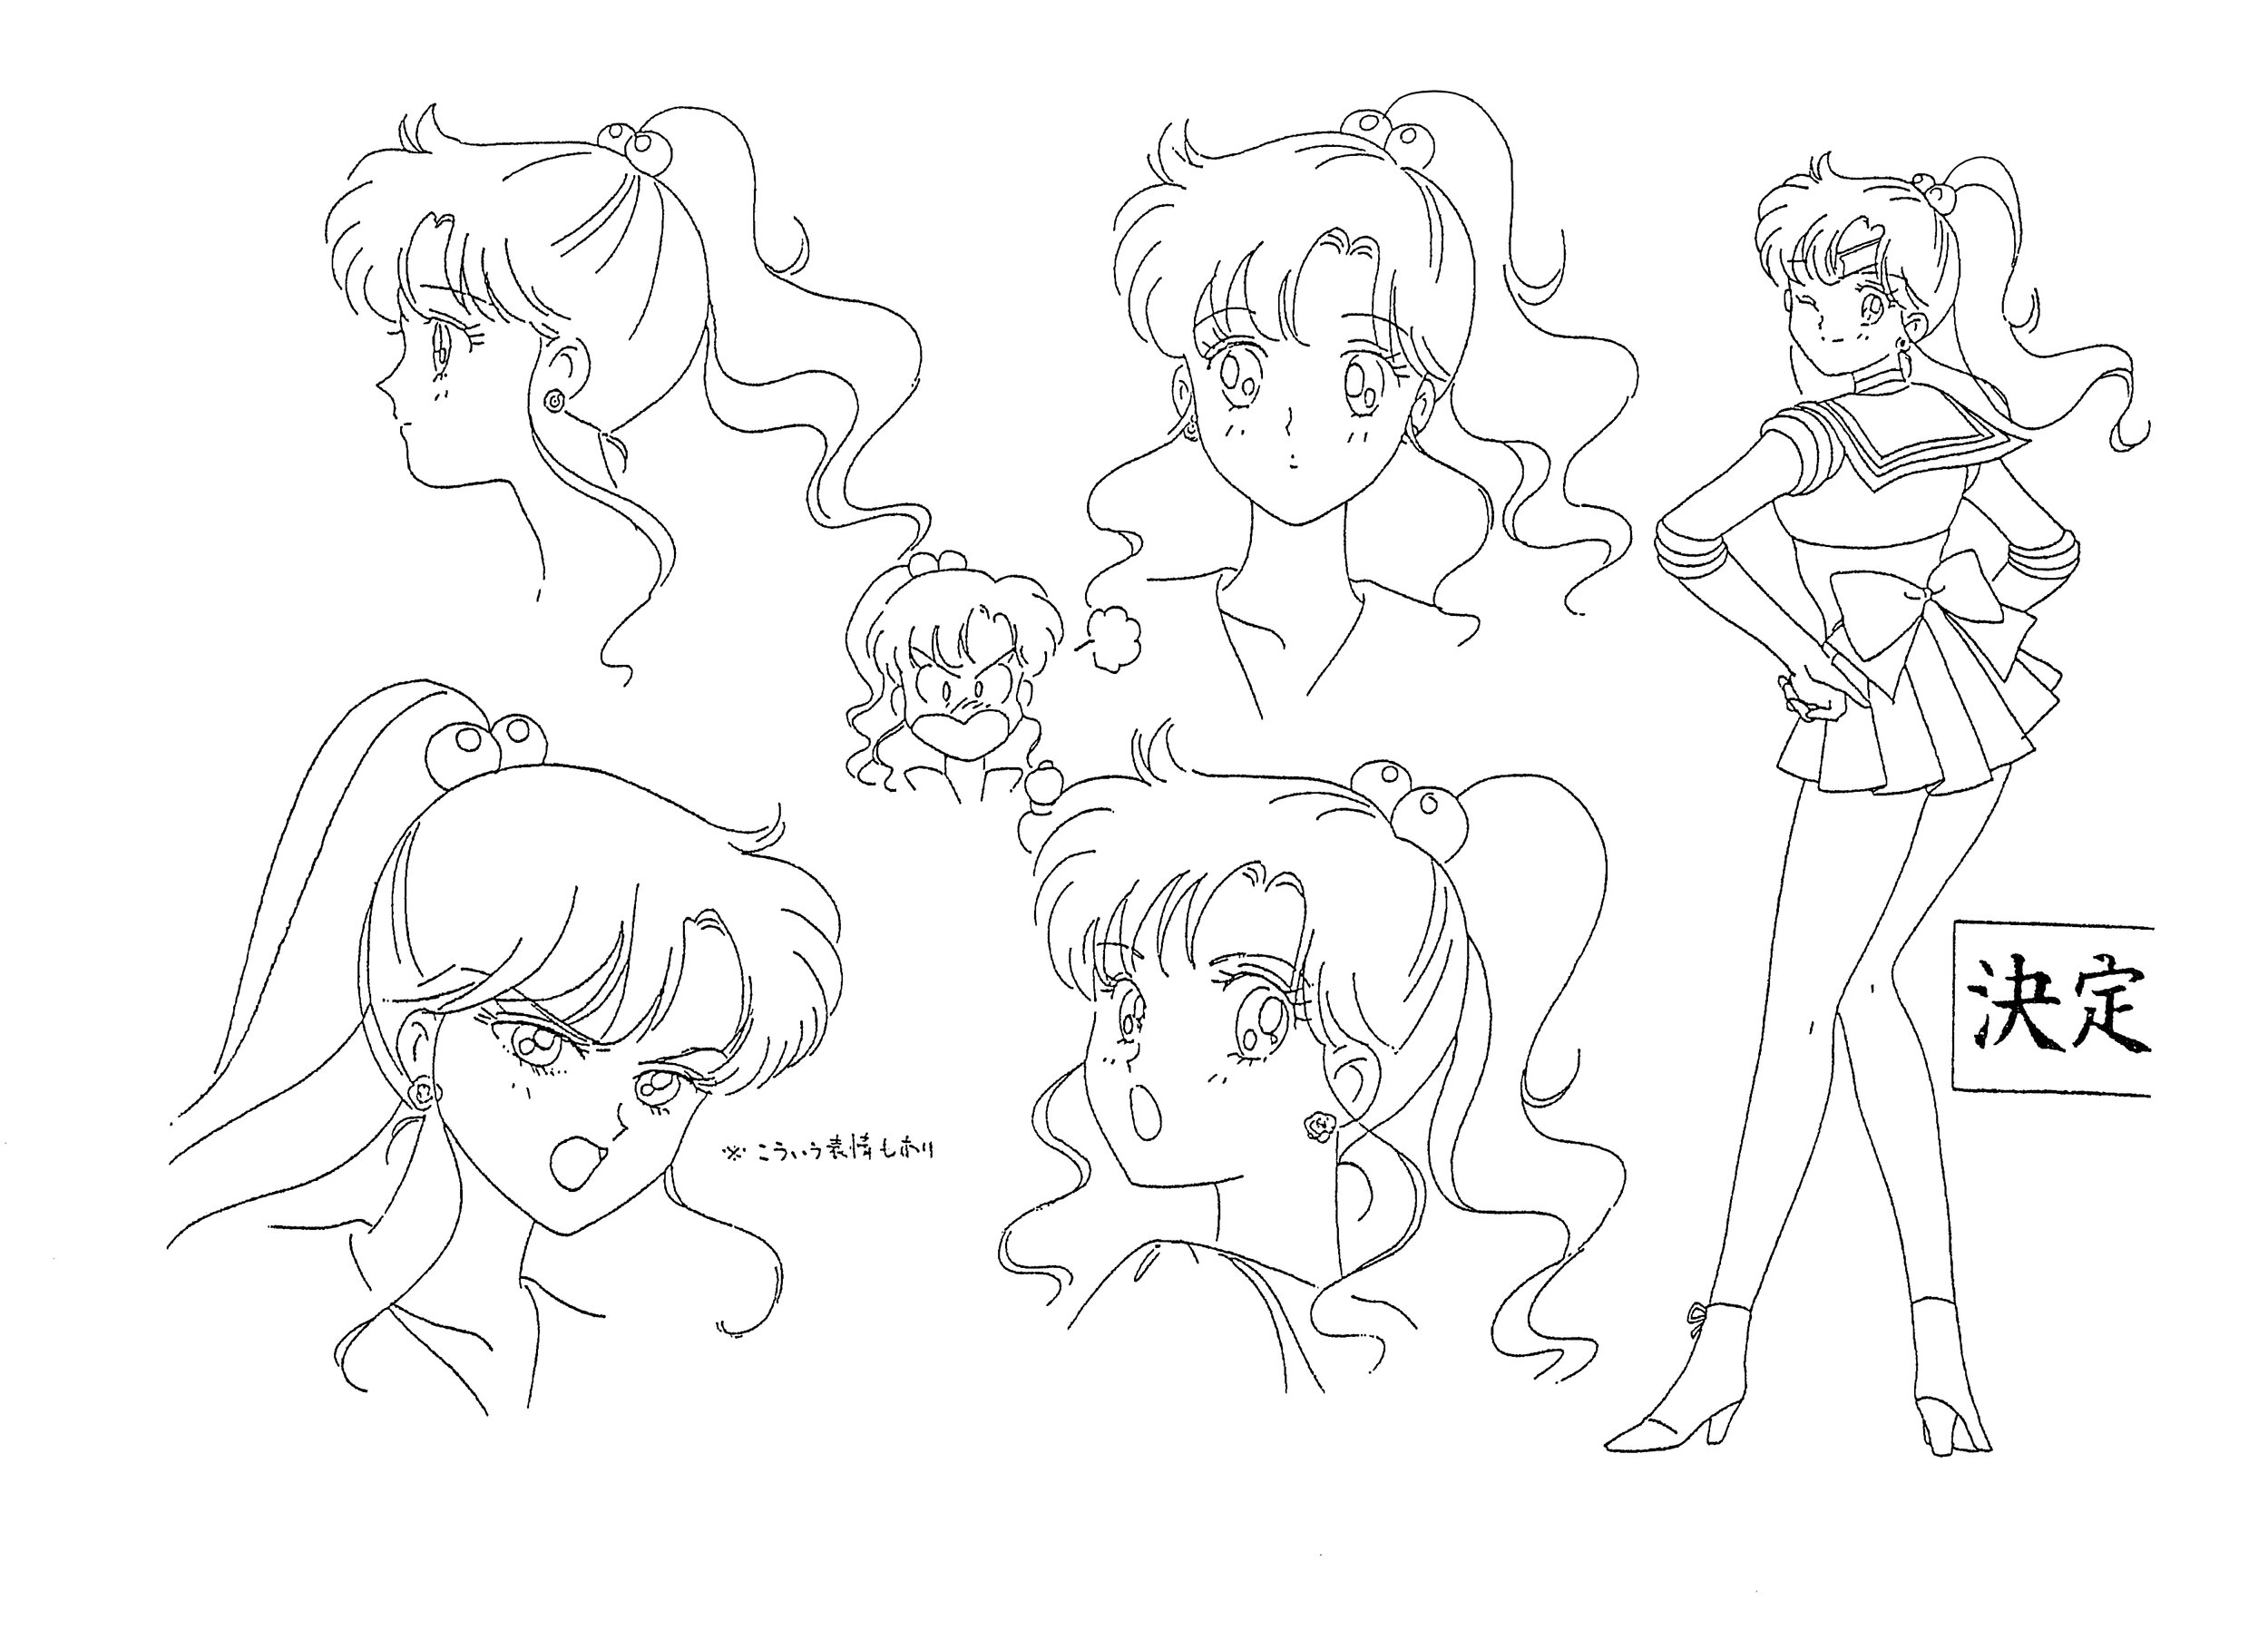 Art of Sailor Moon